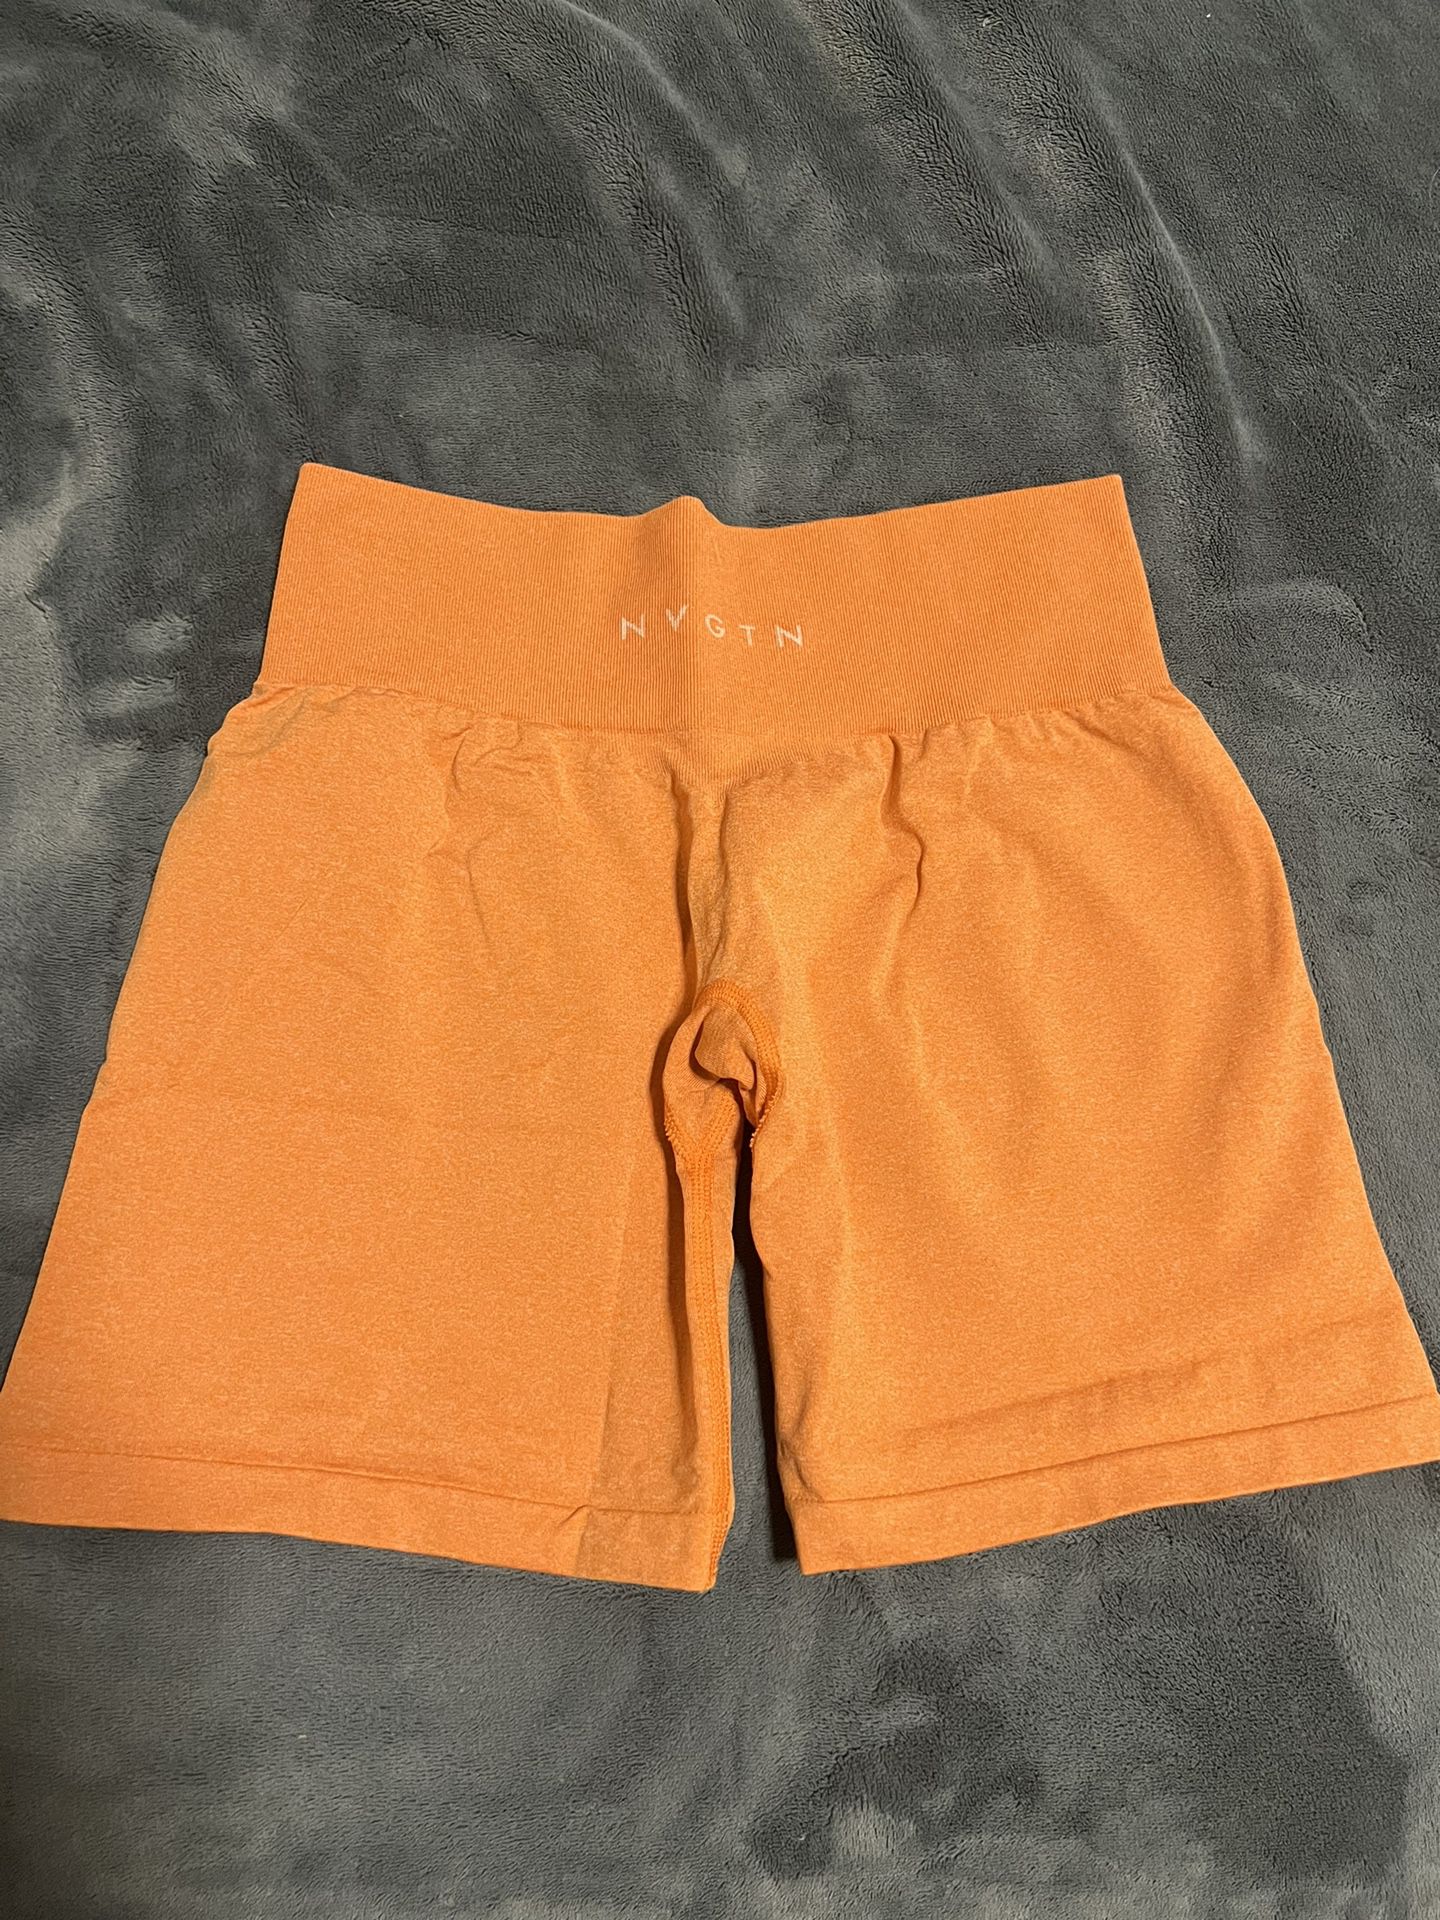 NVGTN shorts 